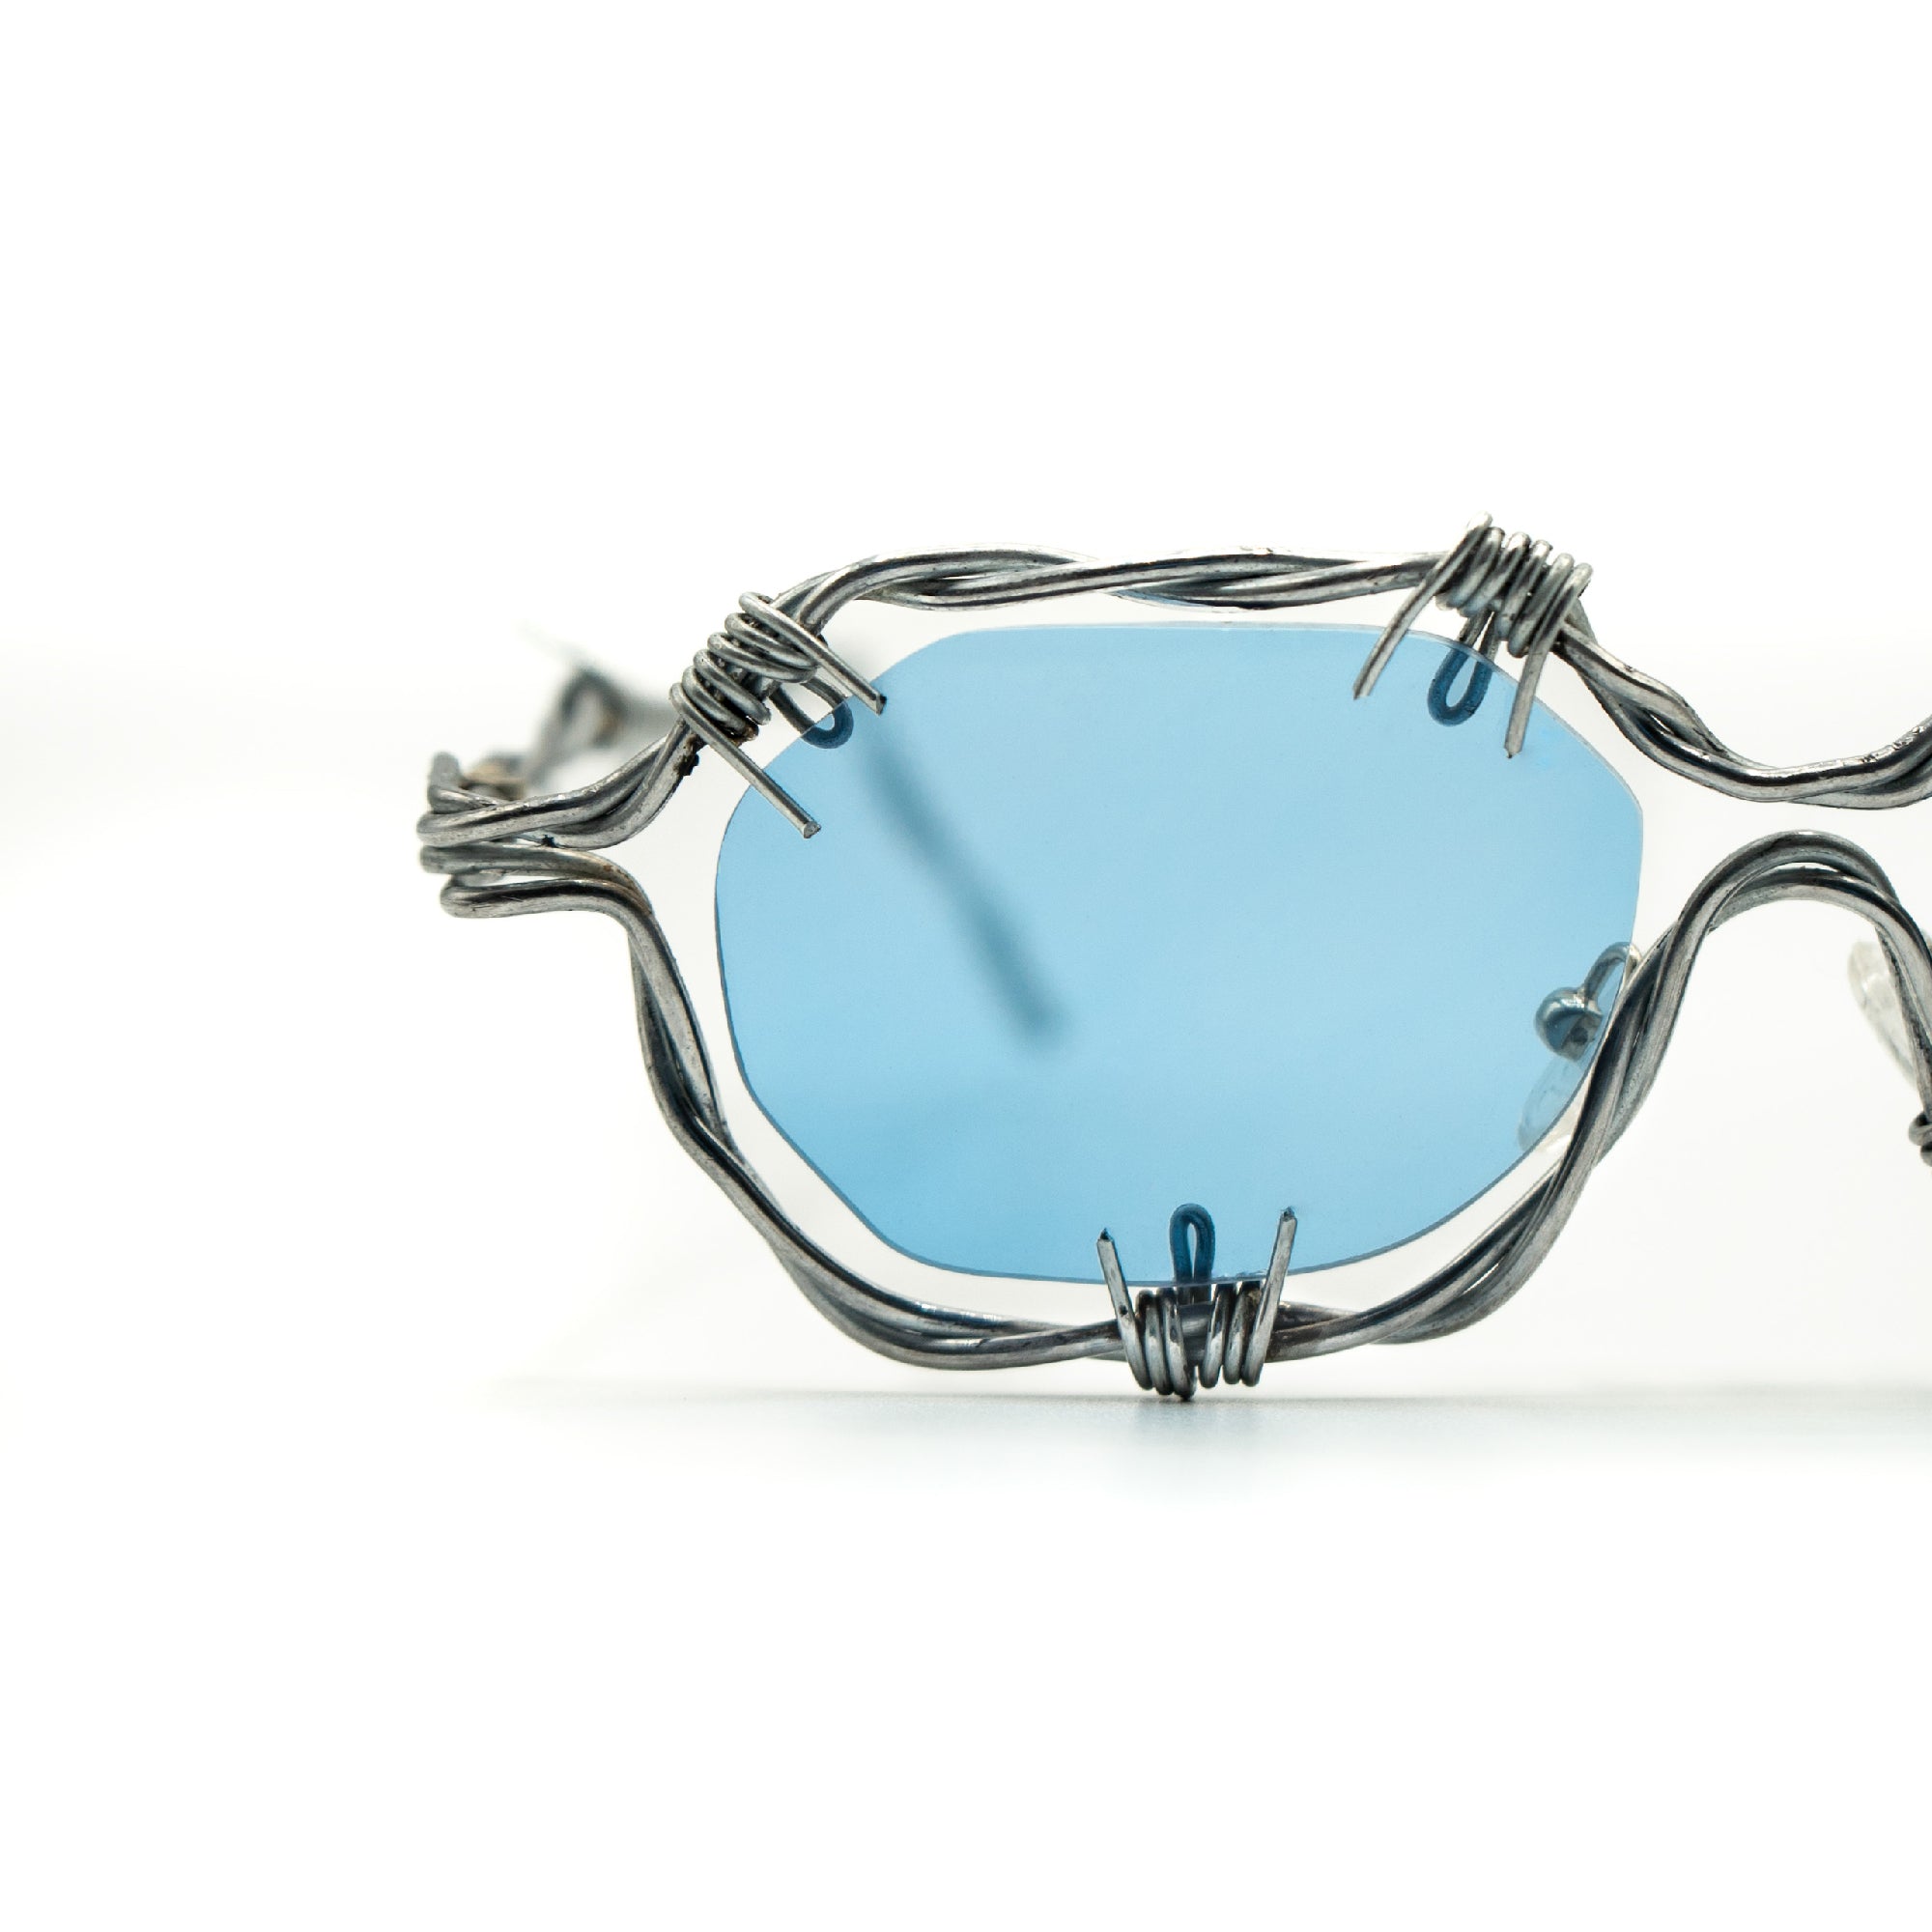 Gafas de diseño hechas a mano con plata y lentes fotocromáticas